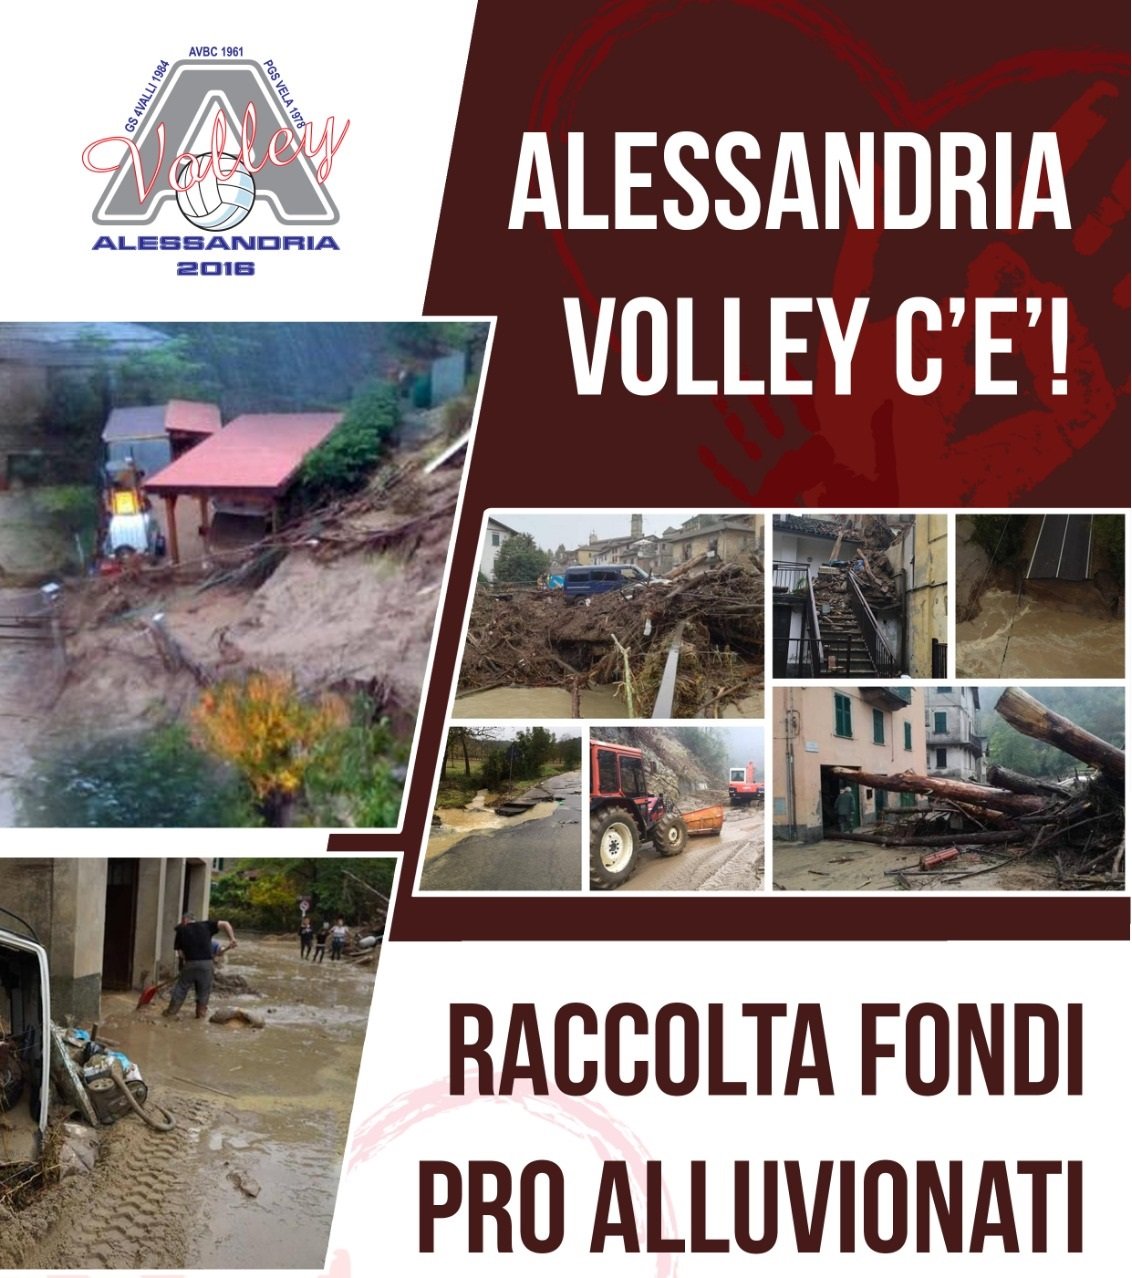 Alessandria Volley scende in campo per aiutare le persone alluvionate